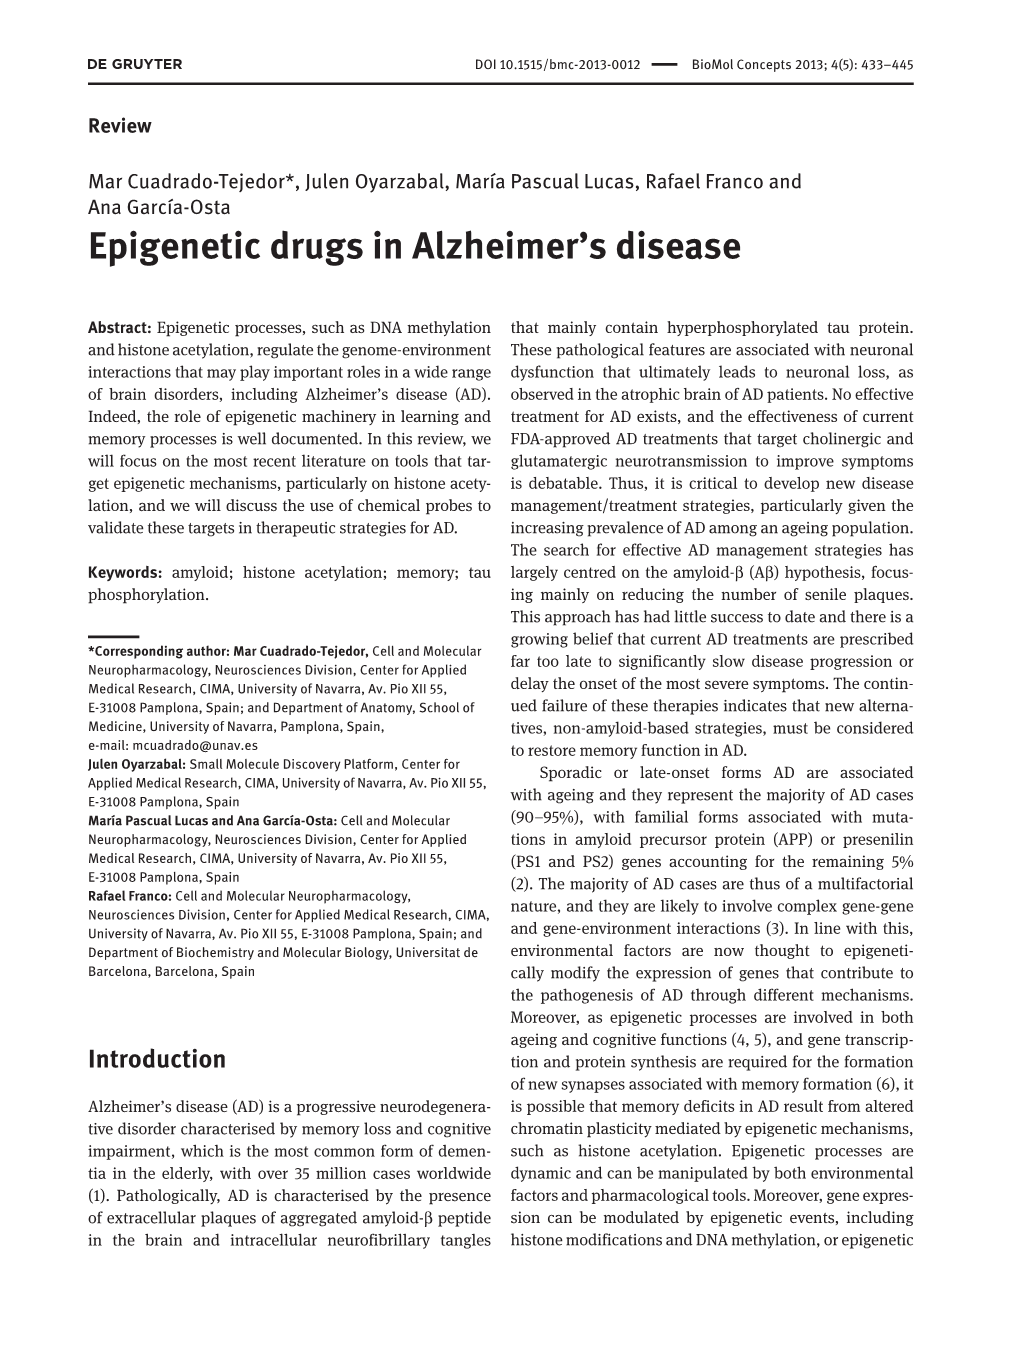 Epigenetic Drugs in Alzheimer's Disease